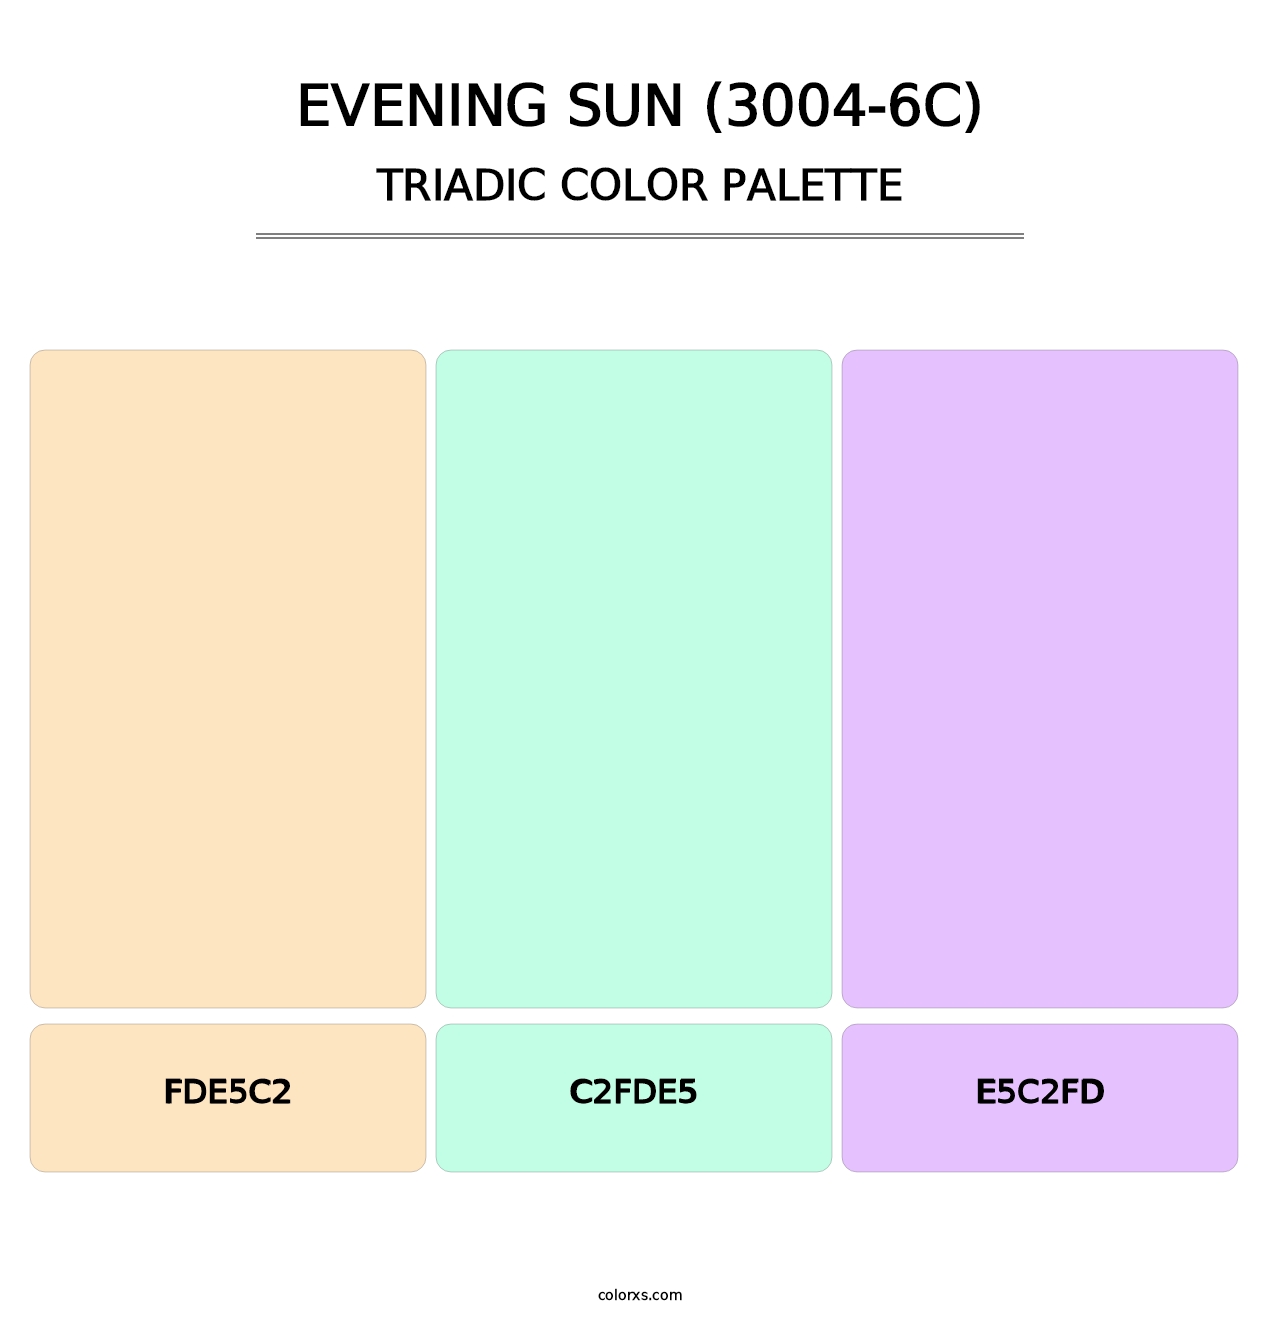 Evening Sun (3004-6C) - Triadic Color Palette